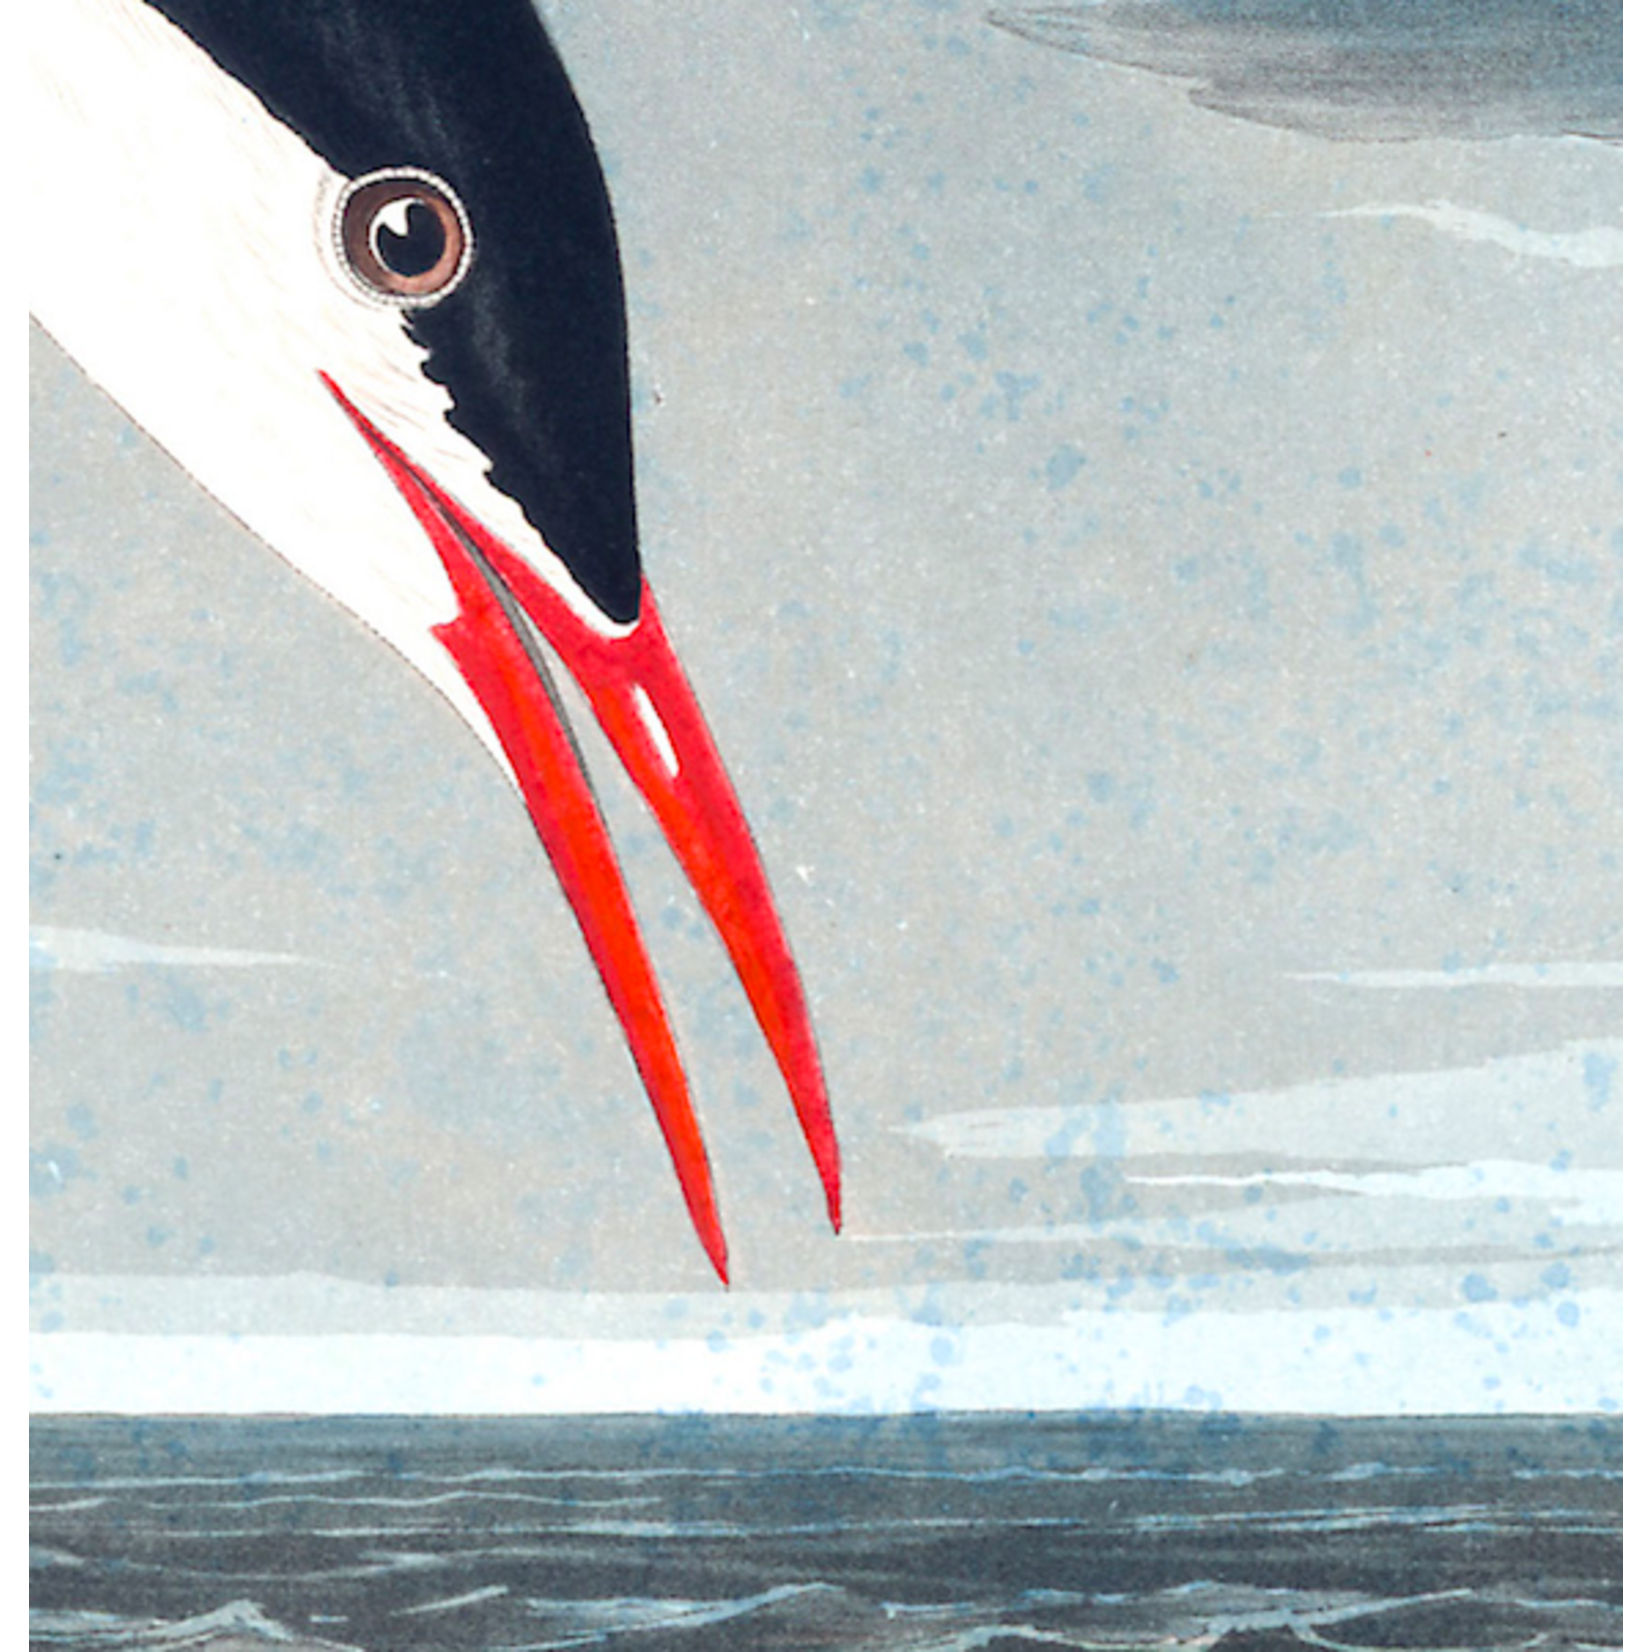 Framed Print on Rag Paper: Artic Tern by John James Audubon